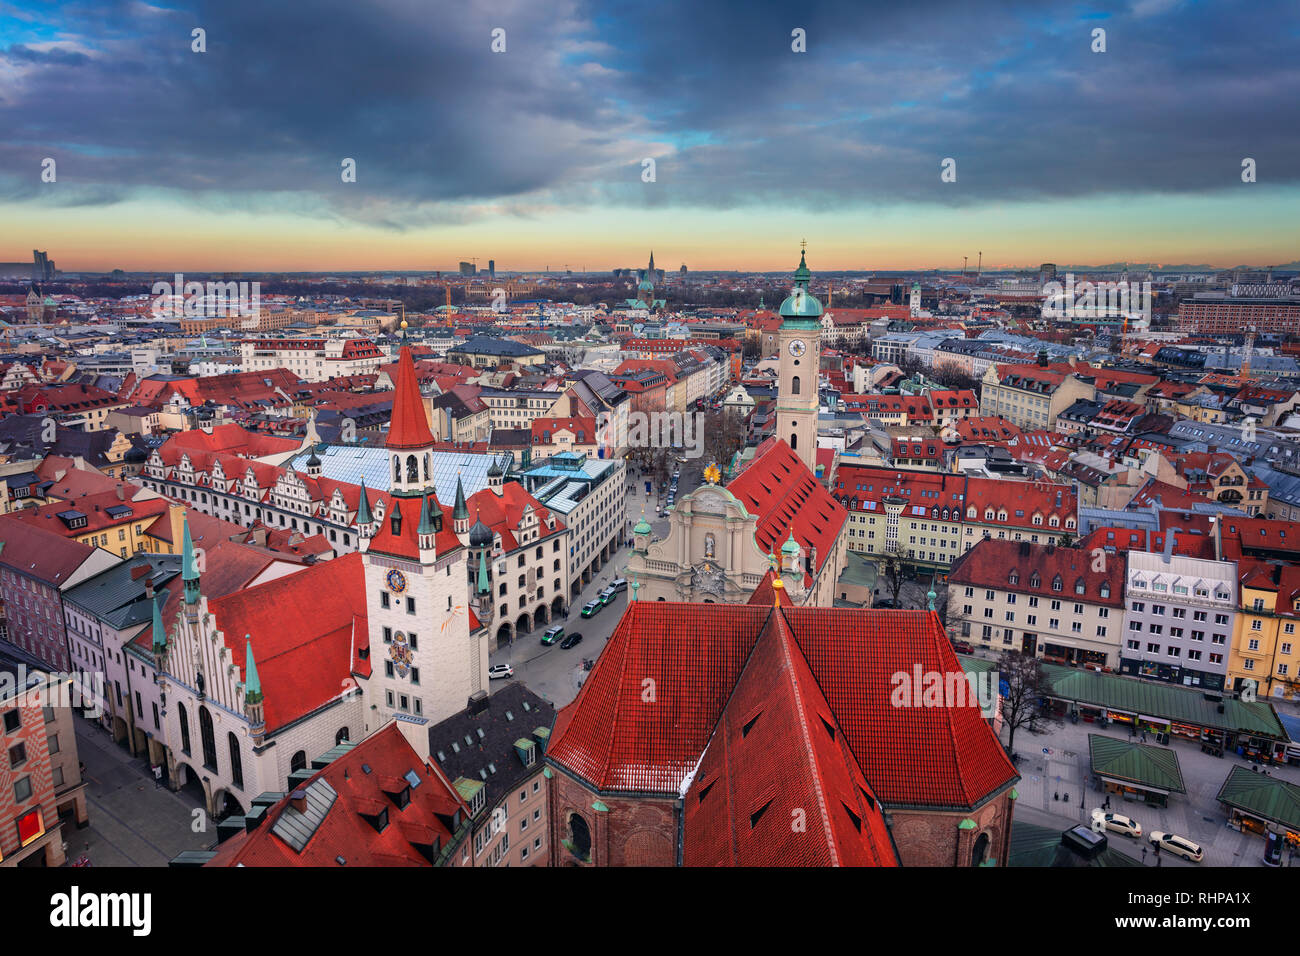 München. Antenne Stadtbild das Bild der Innenstadt von München, Deutschland bei Sonnenuntergang Stockfoto